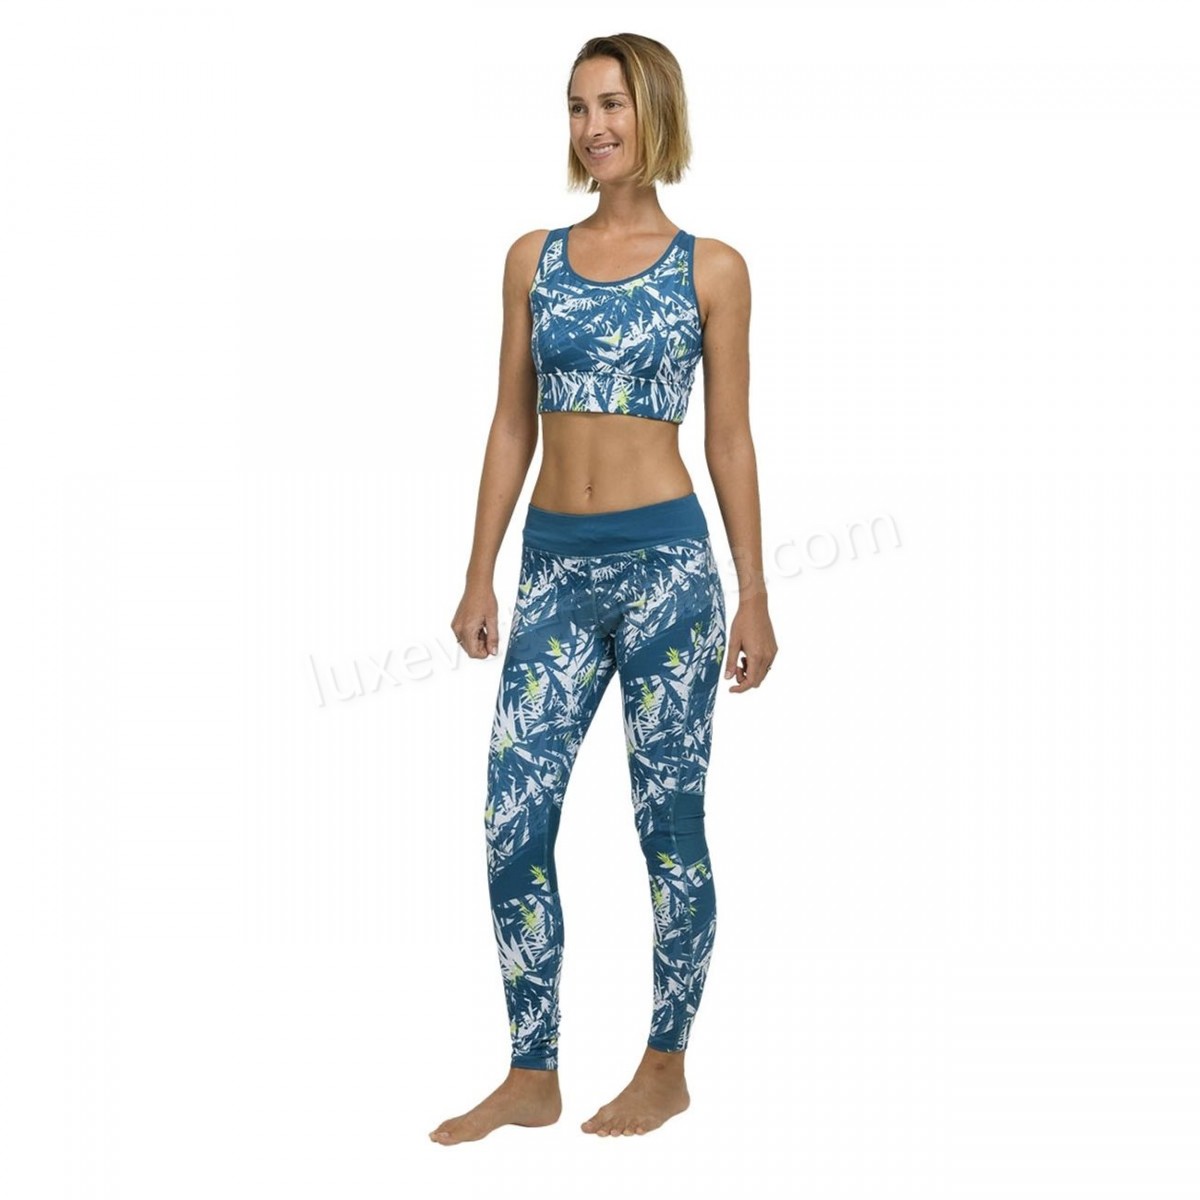 Oxbow-Yoga femme OXBOW Legging RASTA Vente en ligne - -4